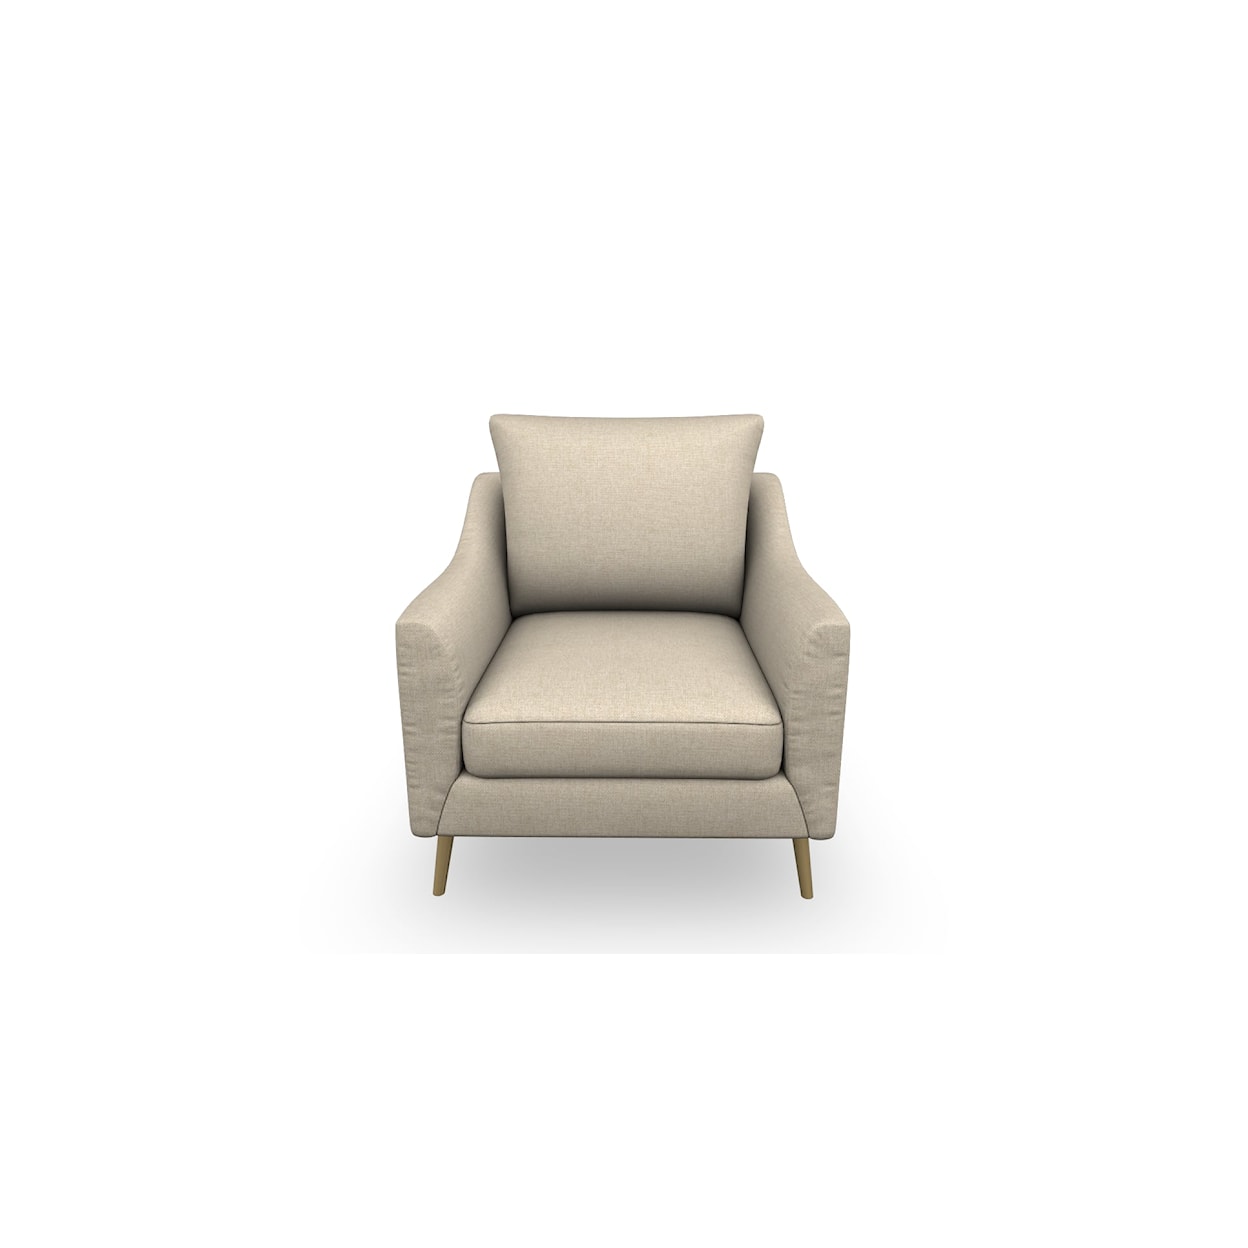 Bravo Furniture Smitten Chair